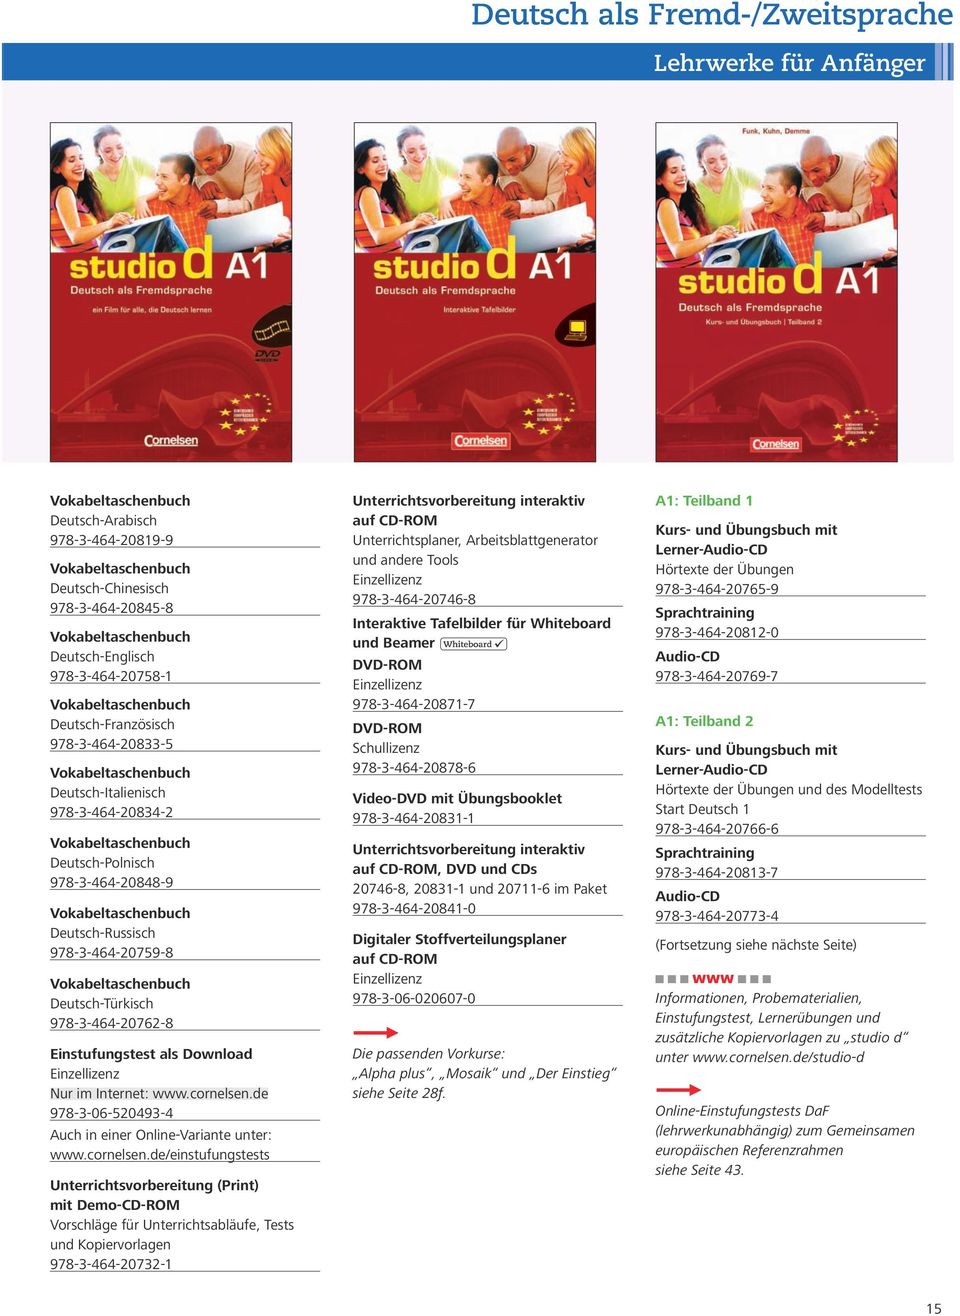 Deutsch-Russisch 978-3-464-20759-8 Vokabeltaschenbuch Deutsch-Türkisch 978-3-464-20762-8 Einstufungstest als Download 978-3-06-520493-4 Auch in einer Online-Variante unter: www.cornelsen.